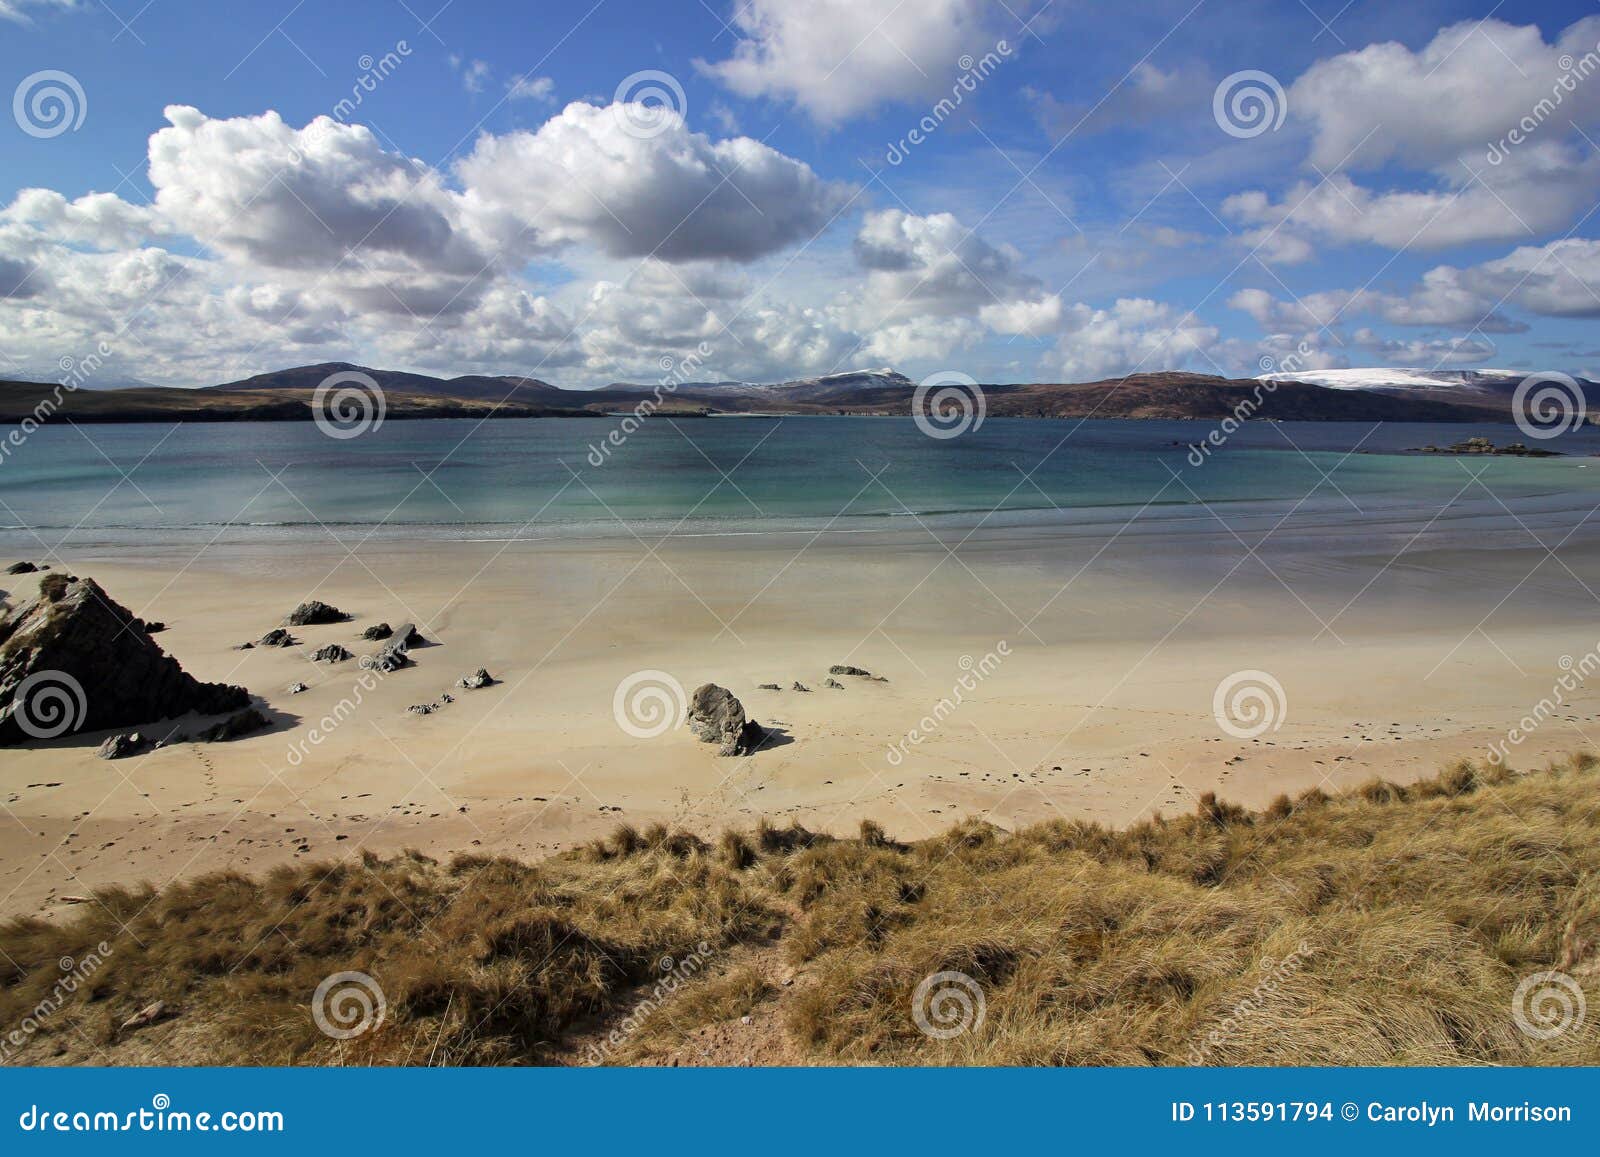 balnakeil beach and sand dunes, durness, north west scottish highlands